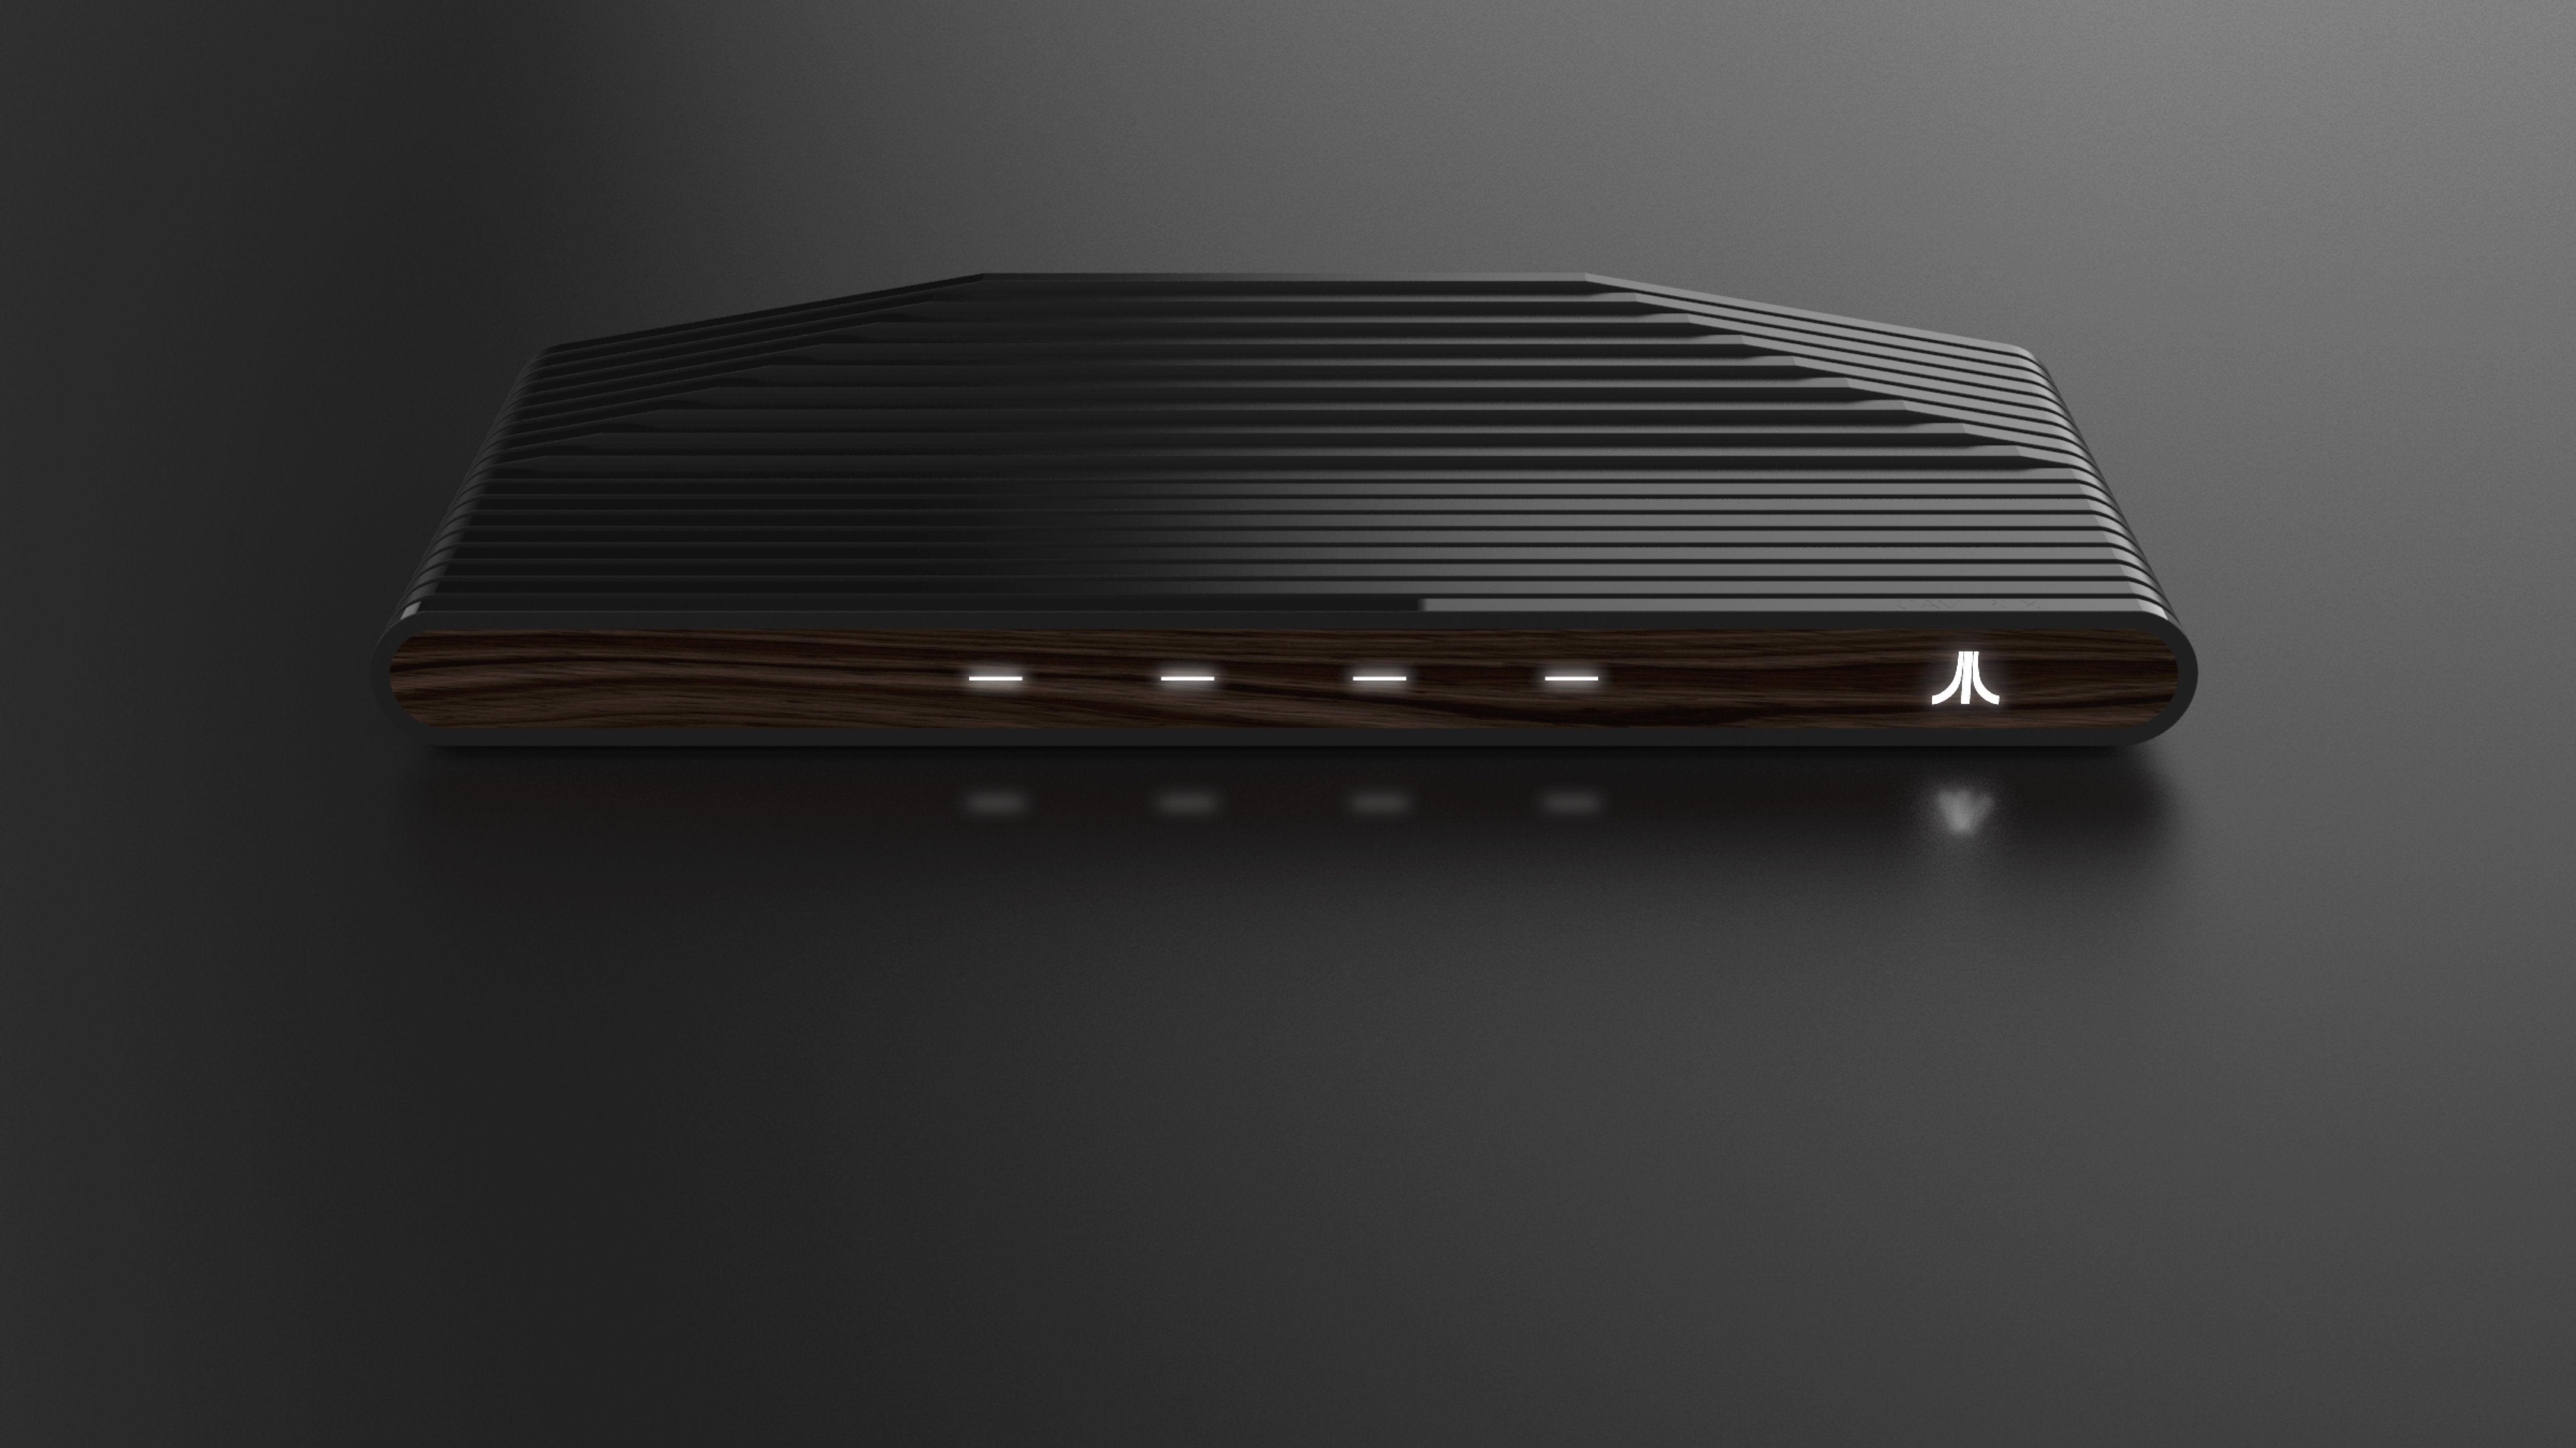 First Look at the Upcoming Ataribox